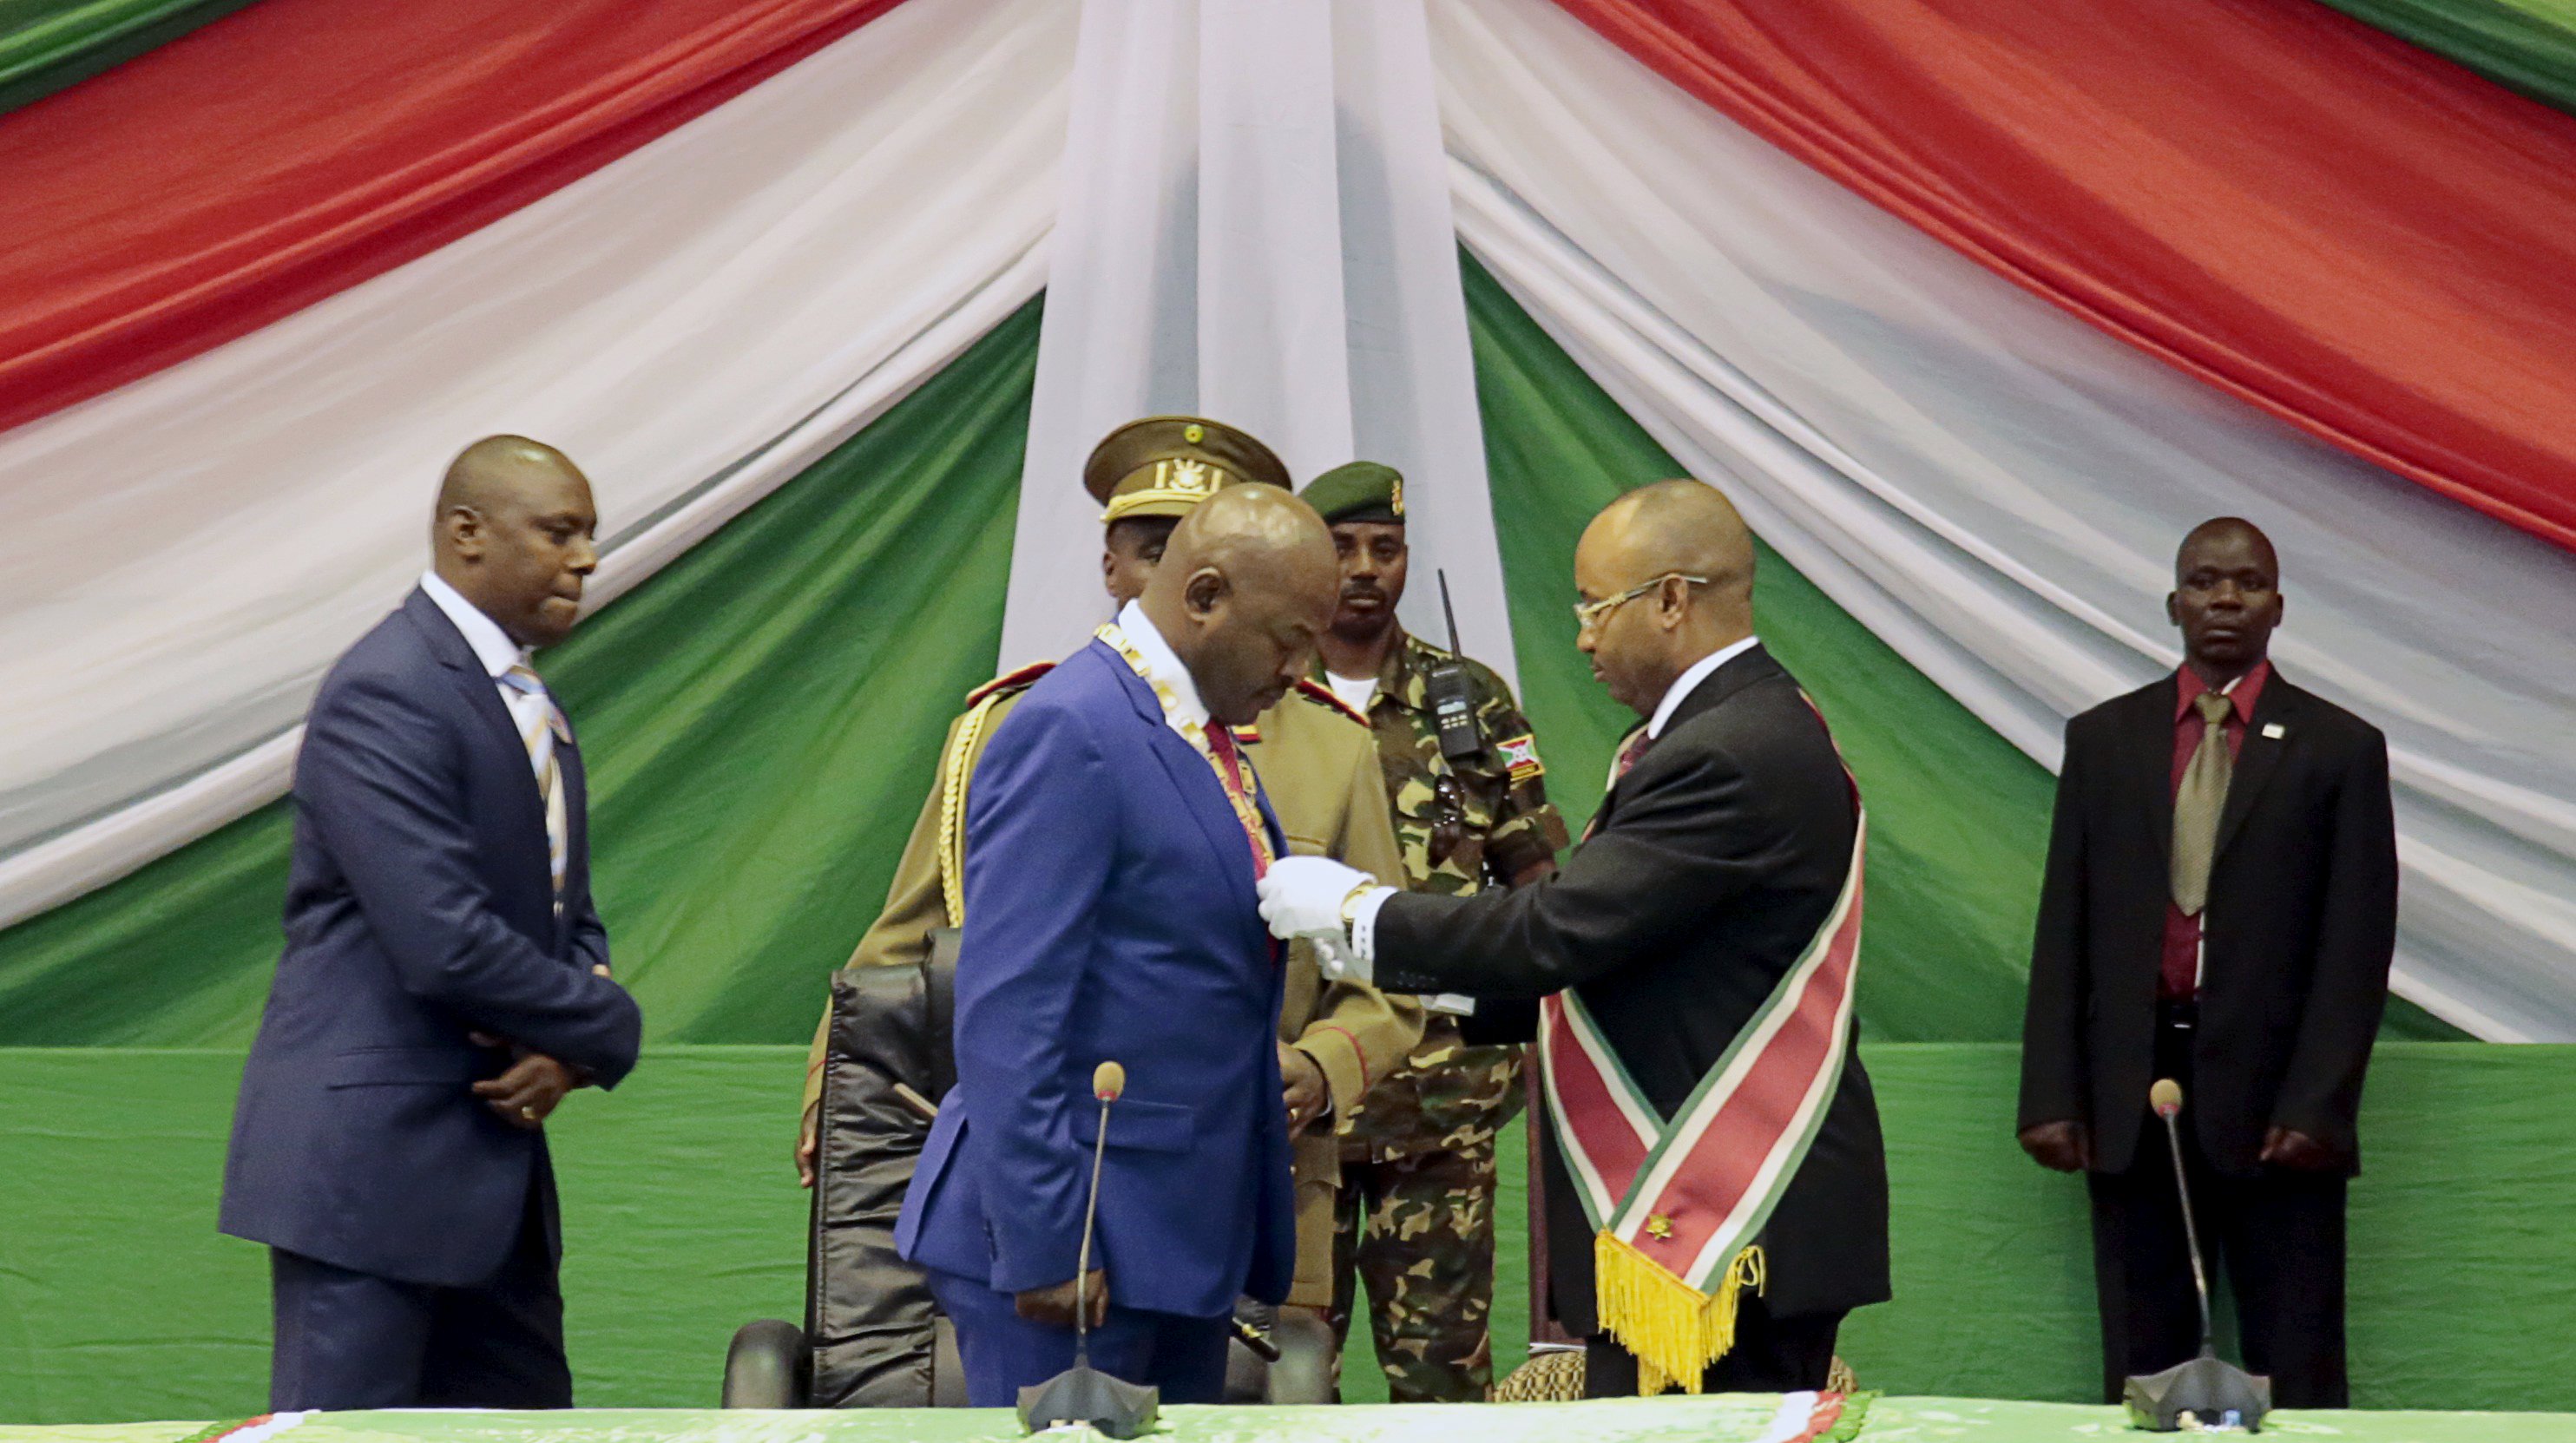 Durante su discurso, el presidente burundés agradeció a las personas que lo eligieron y manifestó que este será su último mandato.